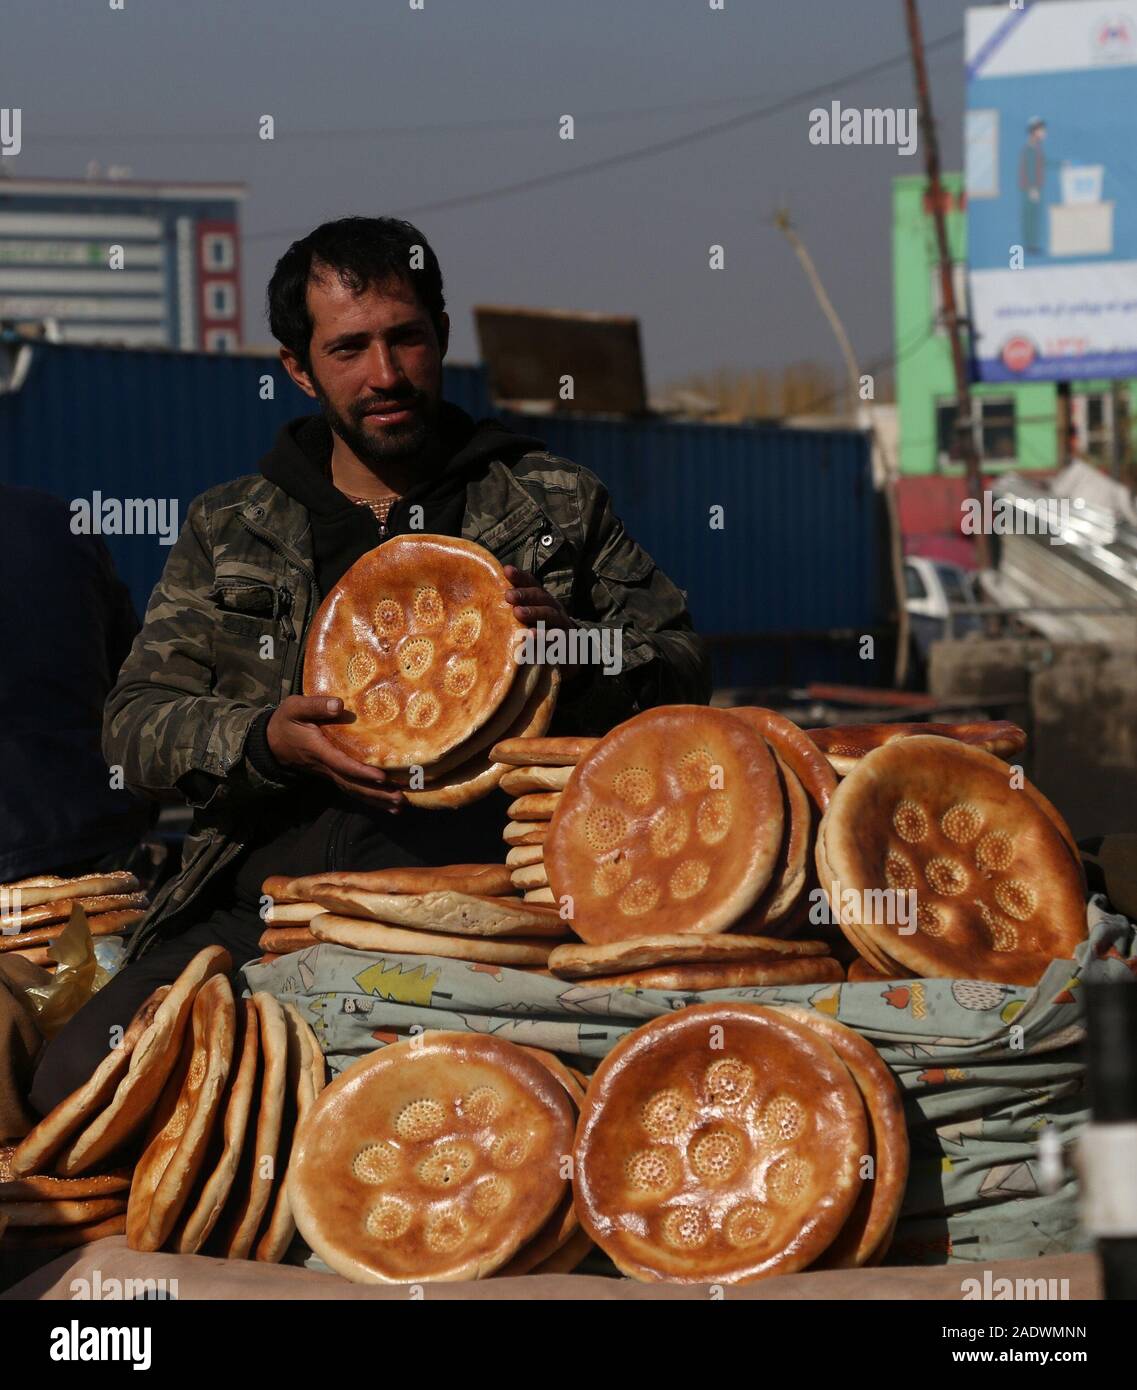 Kabul, Afghanistan. 5 Dez, 2019. Ein afghanischer Anbieter Lebensmittel auf einem Markt in Kabul, der Hauptstadt Afghanistans, Dez. 5, 2019. Die Zahl der Afghanen, die sagen, "das Land in die richtige Richtung bewegt" stieg in 2019 gegenüber dem Vorjahr, laut einer Umfrage Bericht hier Dienstag freigegeben. Credit: Sayed Mominzadah/Xinhua/Alamy leben Nachrichten Stockfoto